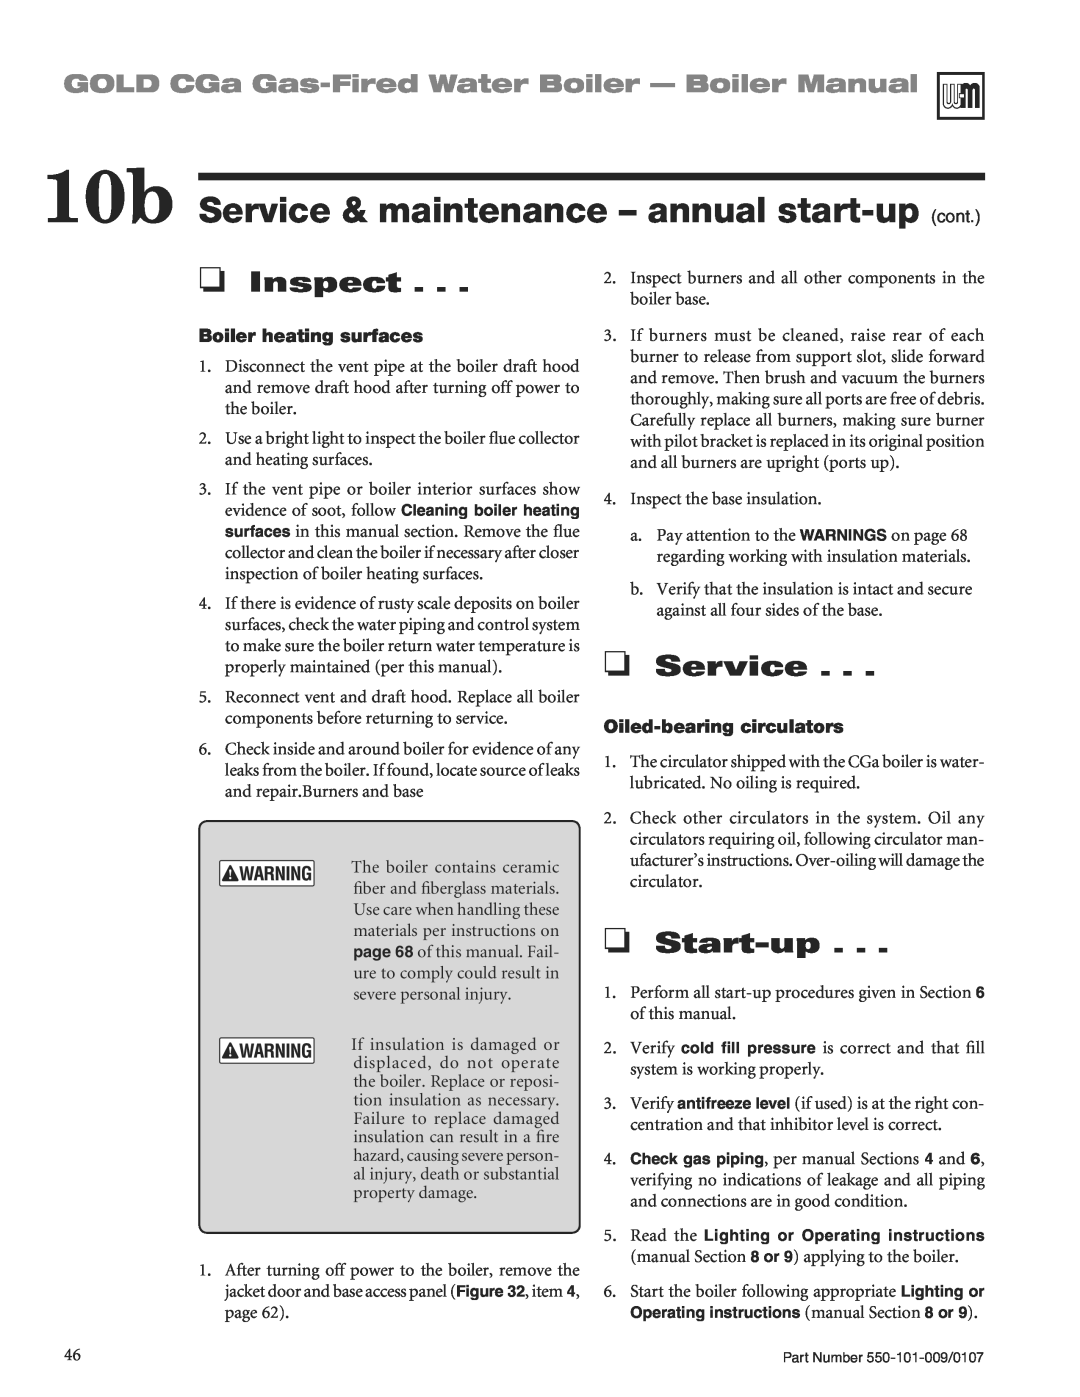 Weil-McLain CGA25SPDN manual 10b Service & maintenance - annual start-up cont, OService, OStart-up, OInspect 